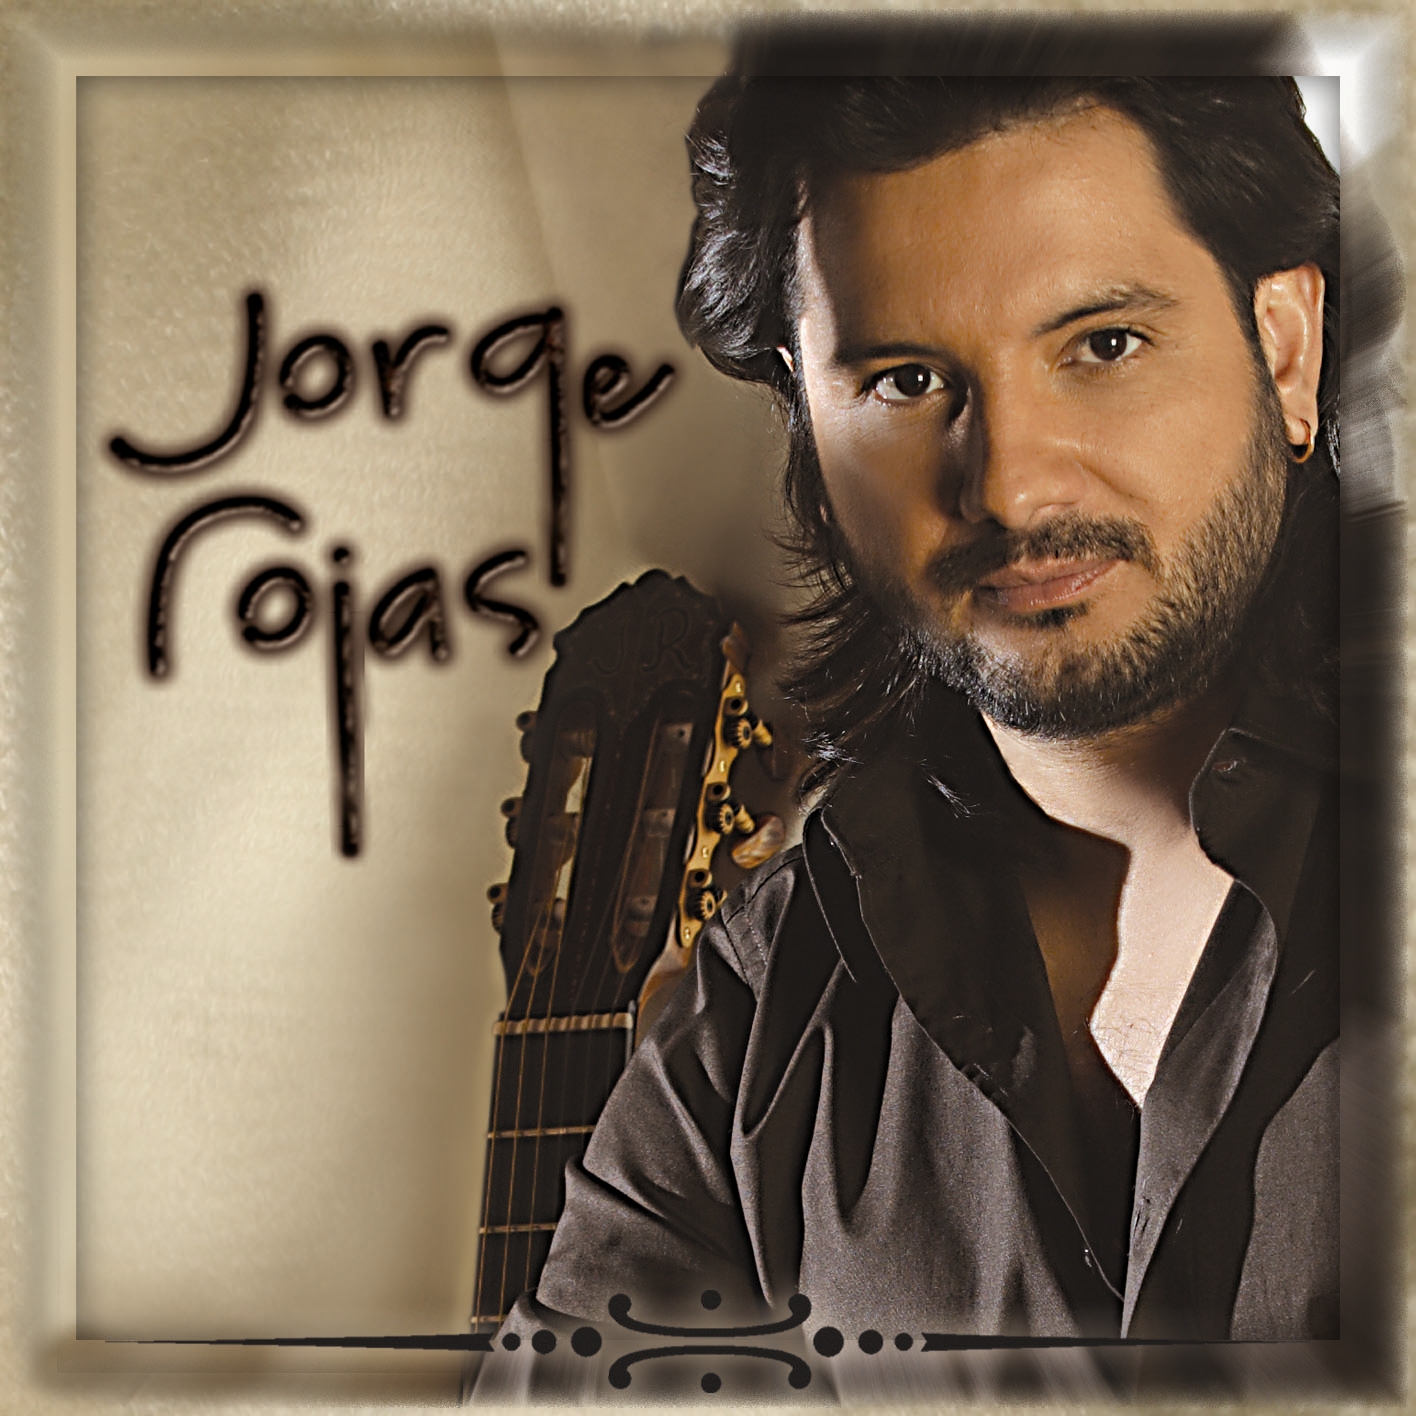 Jorge Rojas - Obras Jorge Rosas